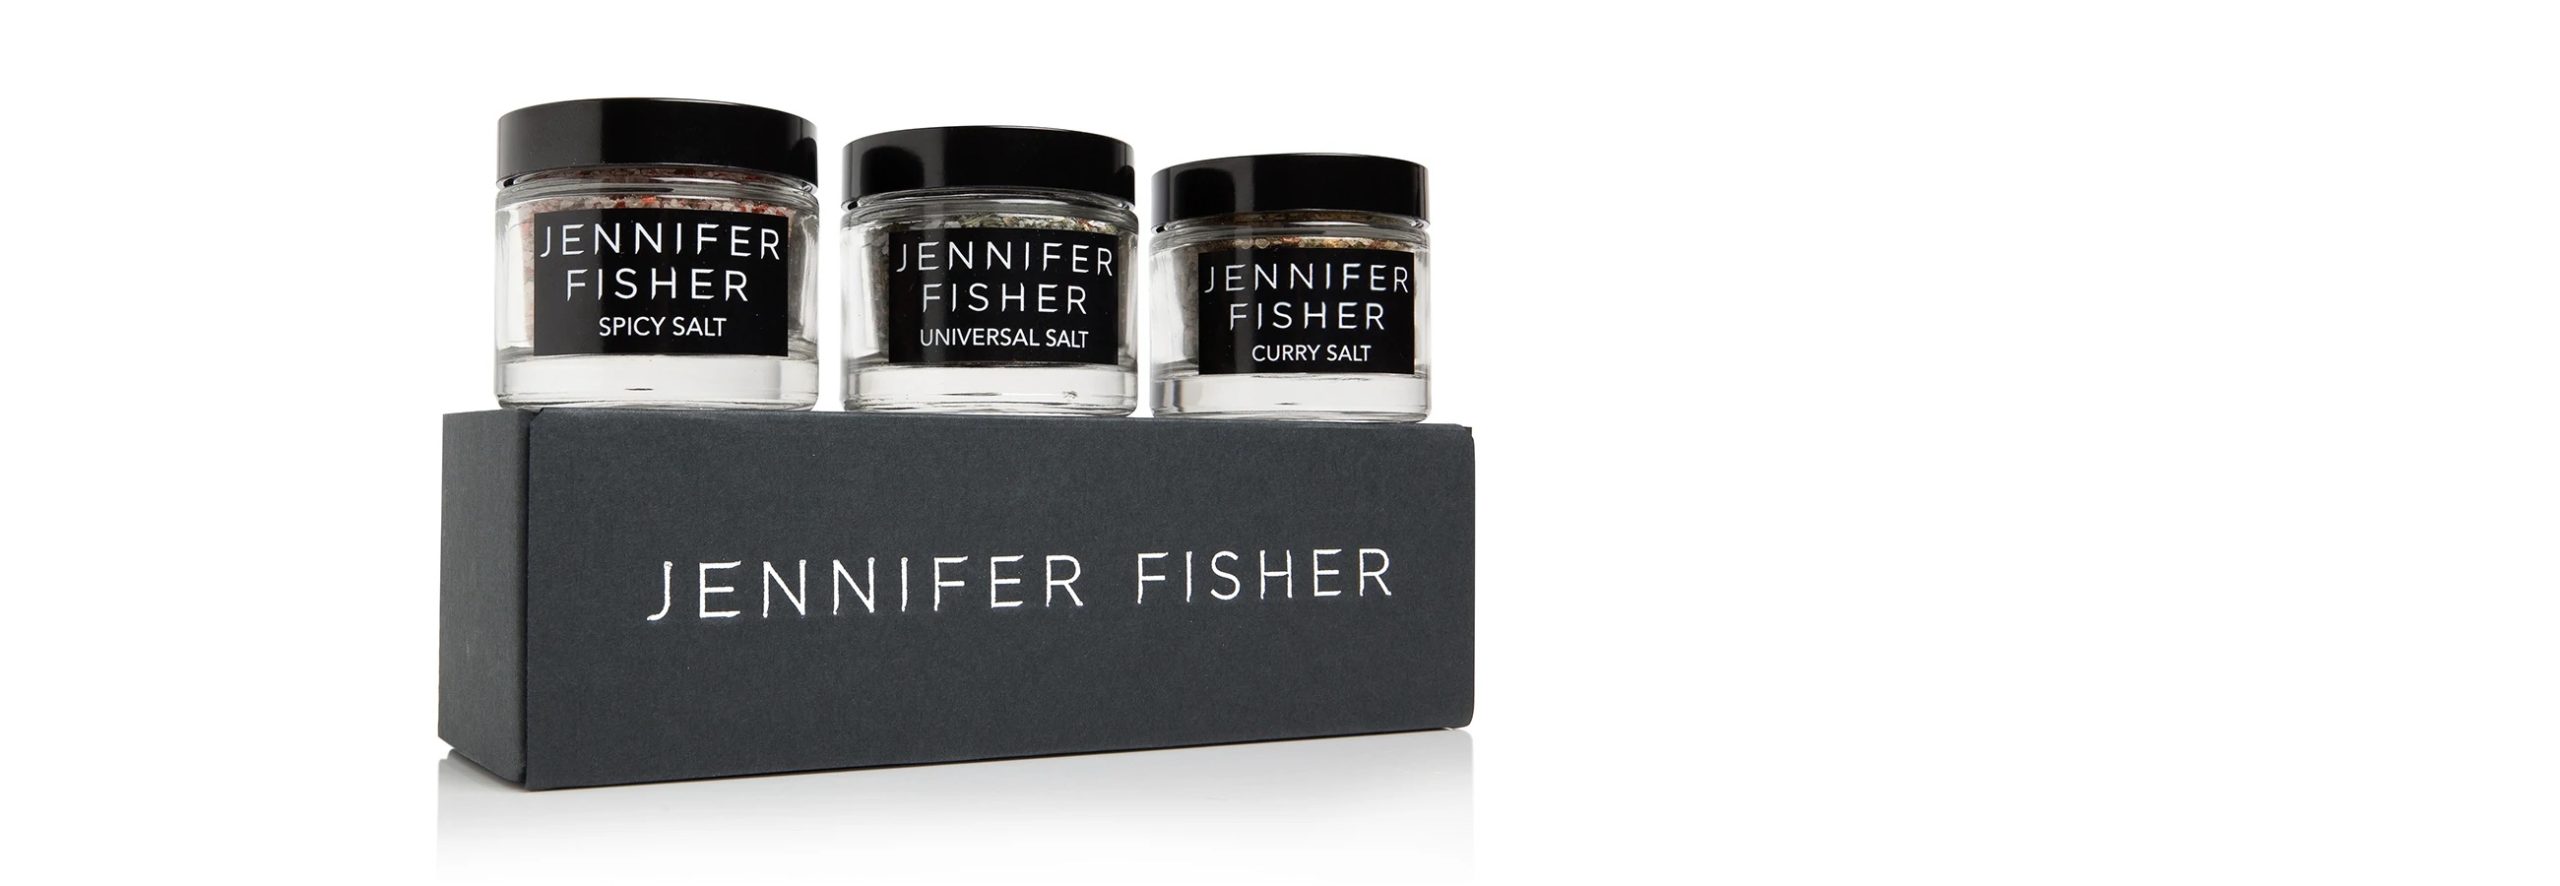 Jennifer Fisher salts